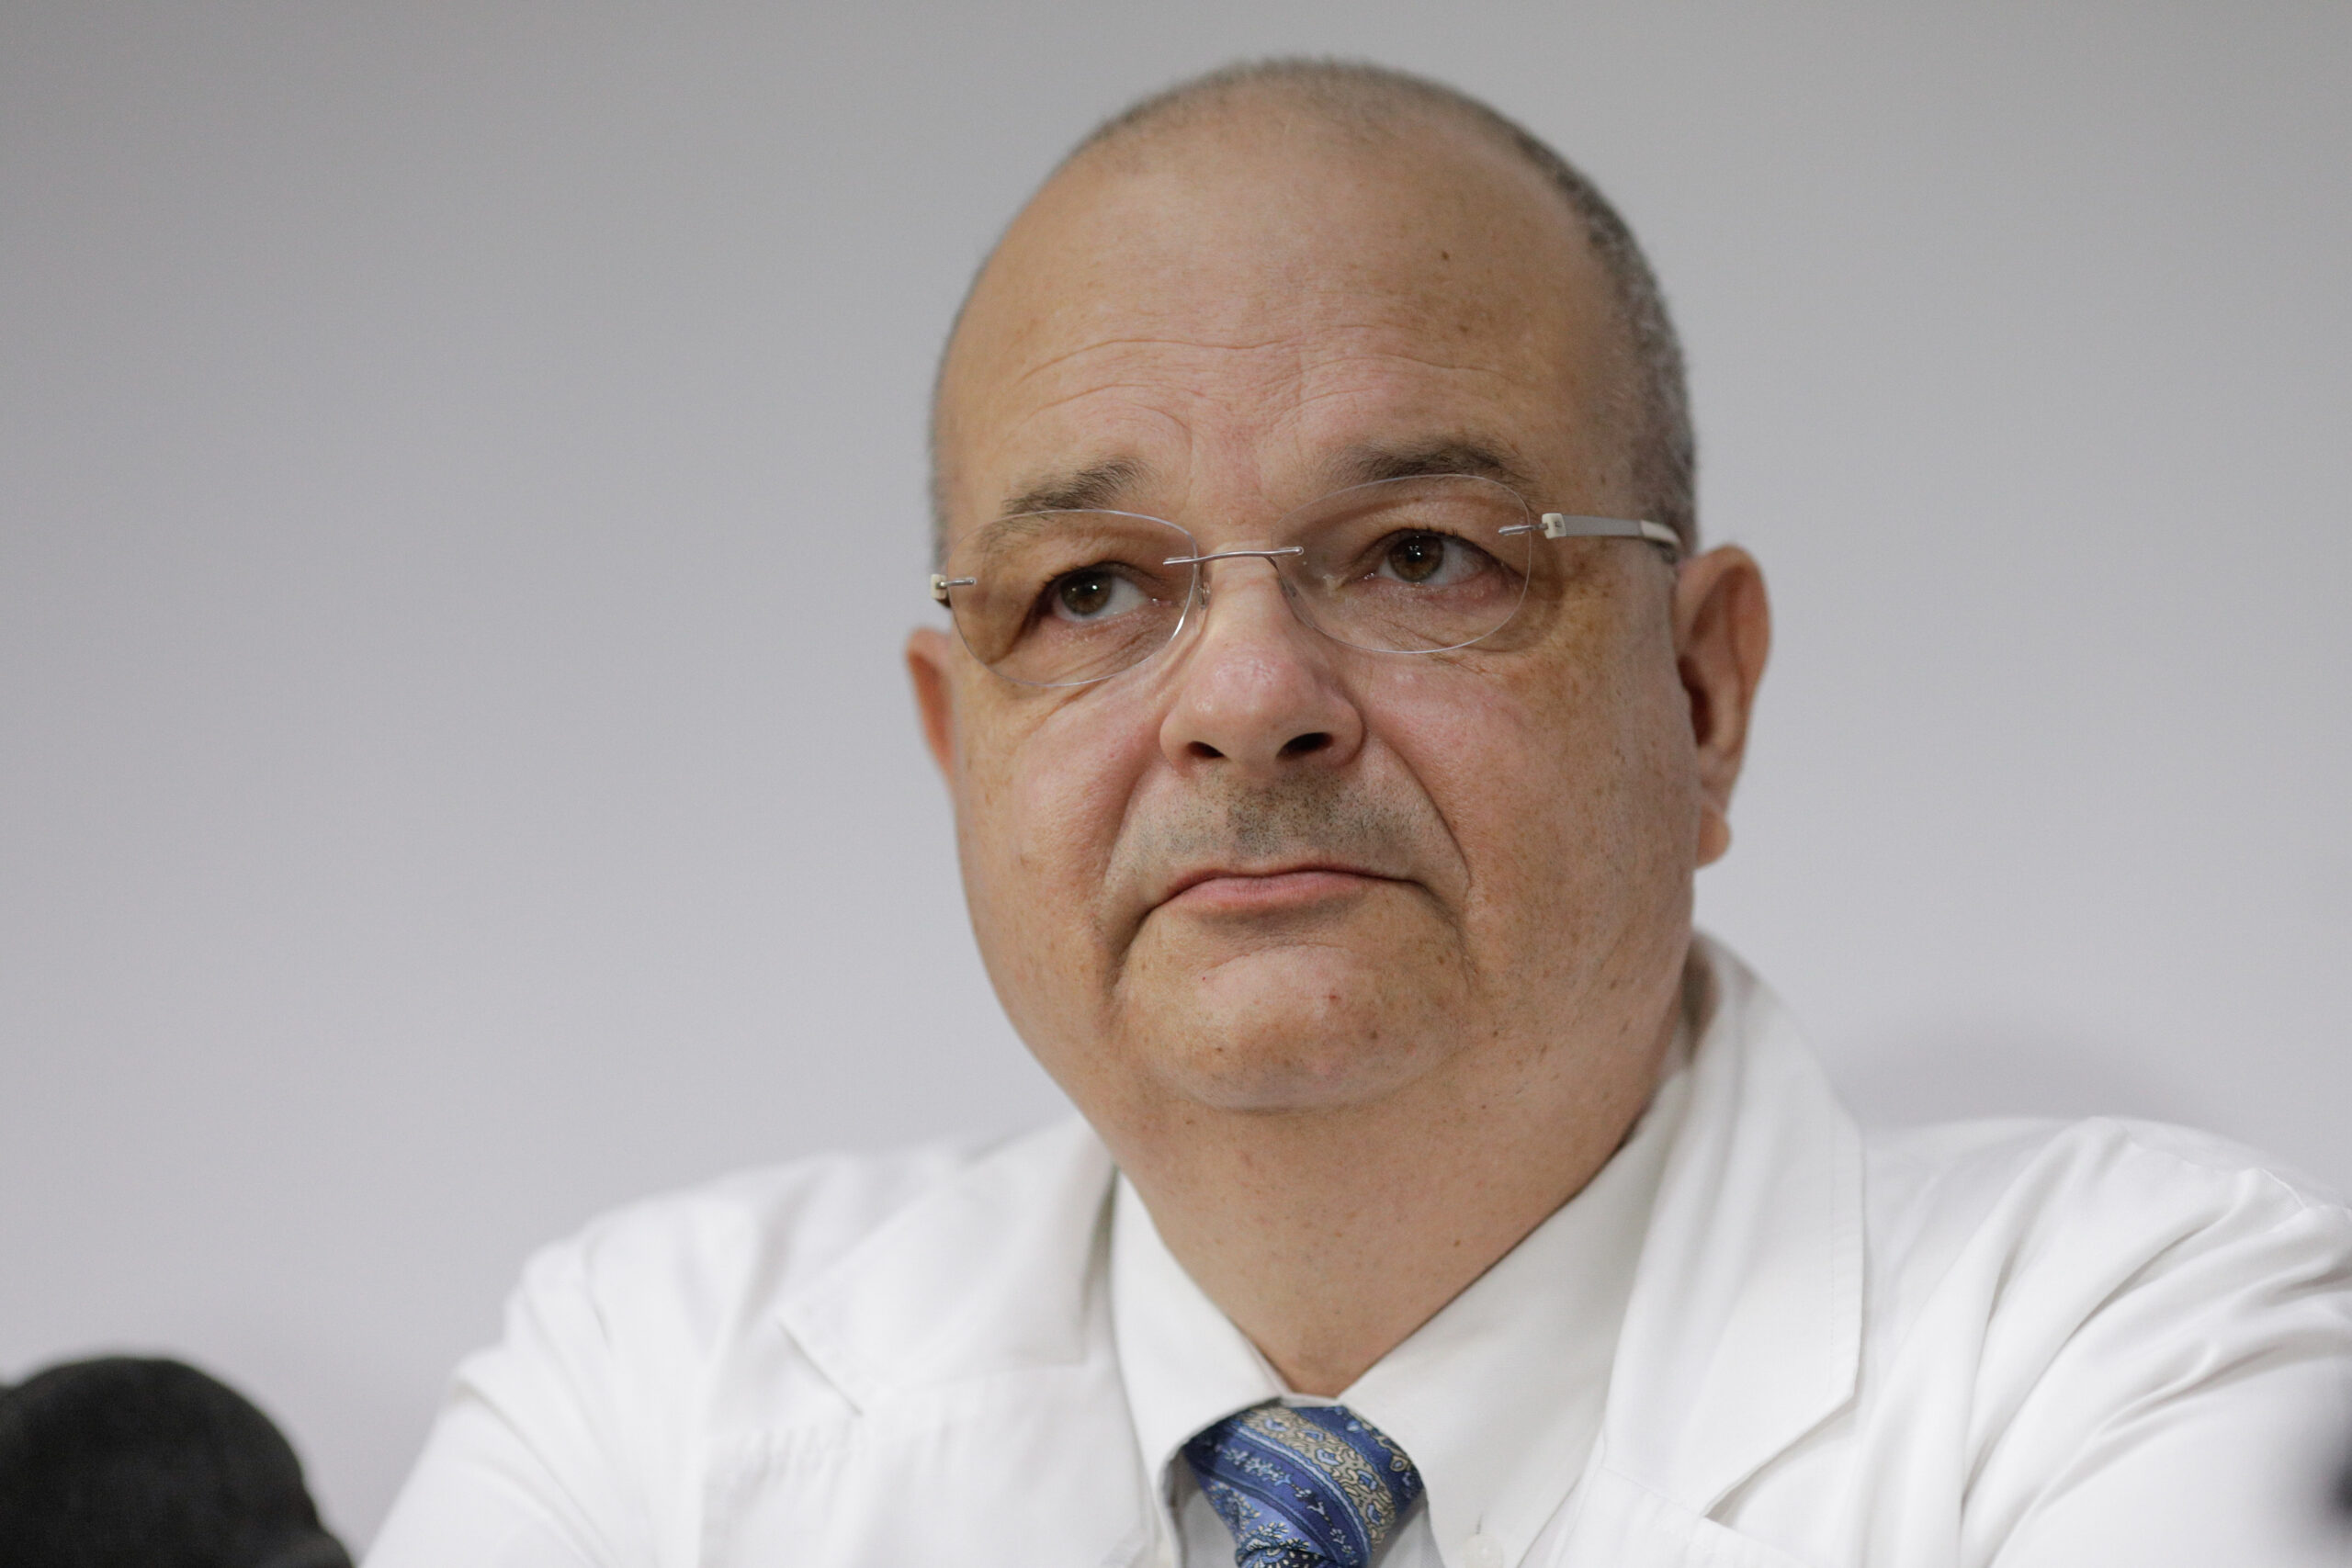 Prof. Dr. Alexandru Ulici, managerul Spitalului de Pediatrie Grigore Alexandrescu